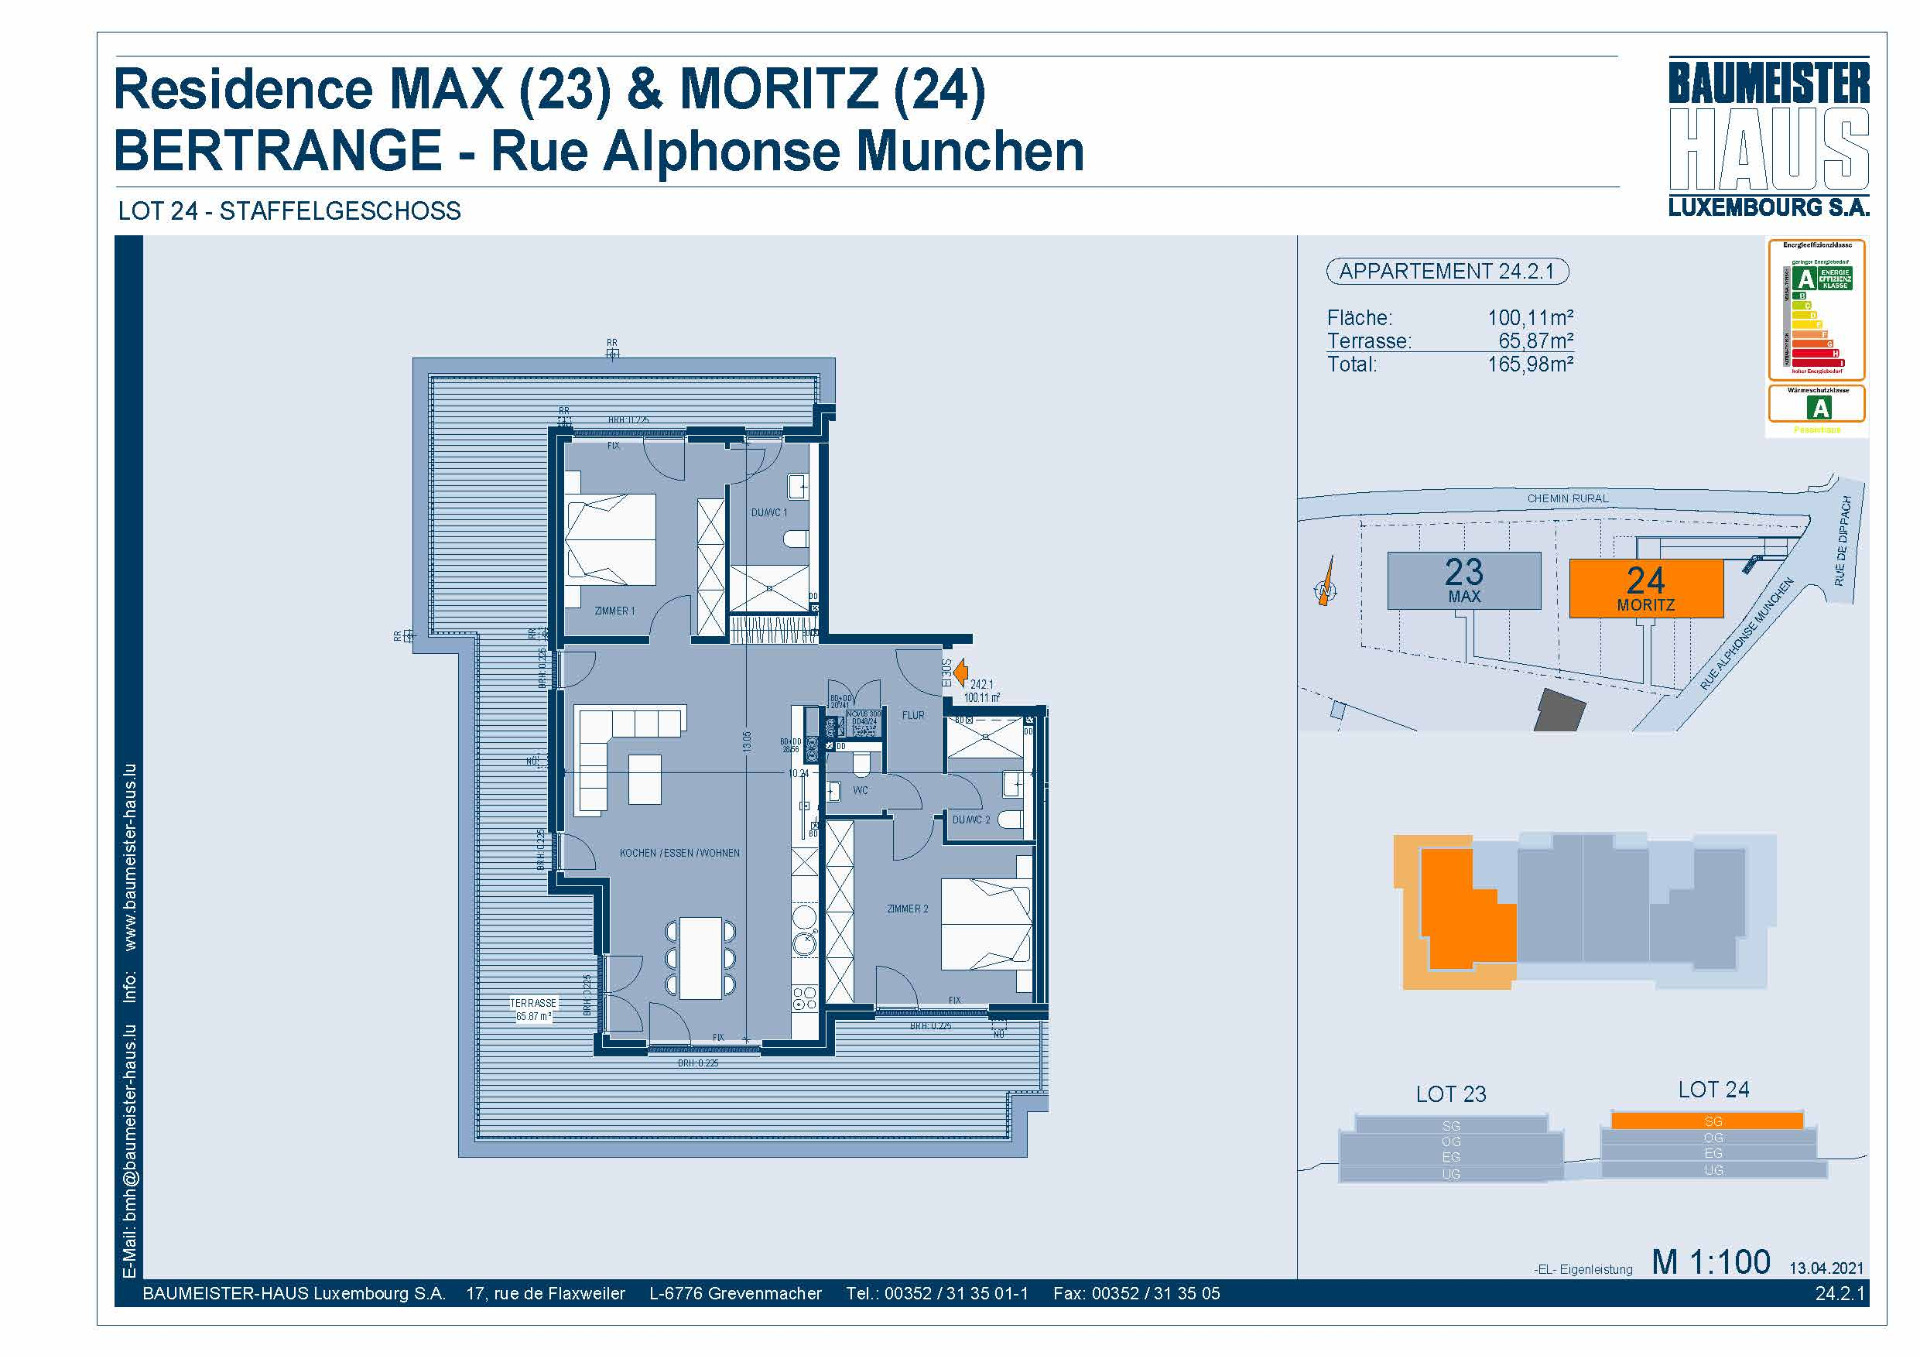 Residenz Moritz 24.2.1